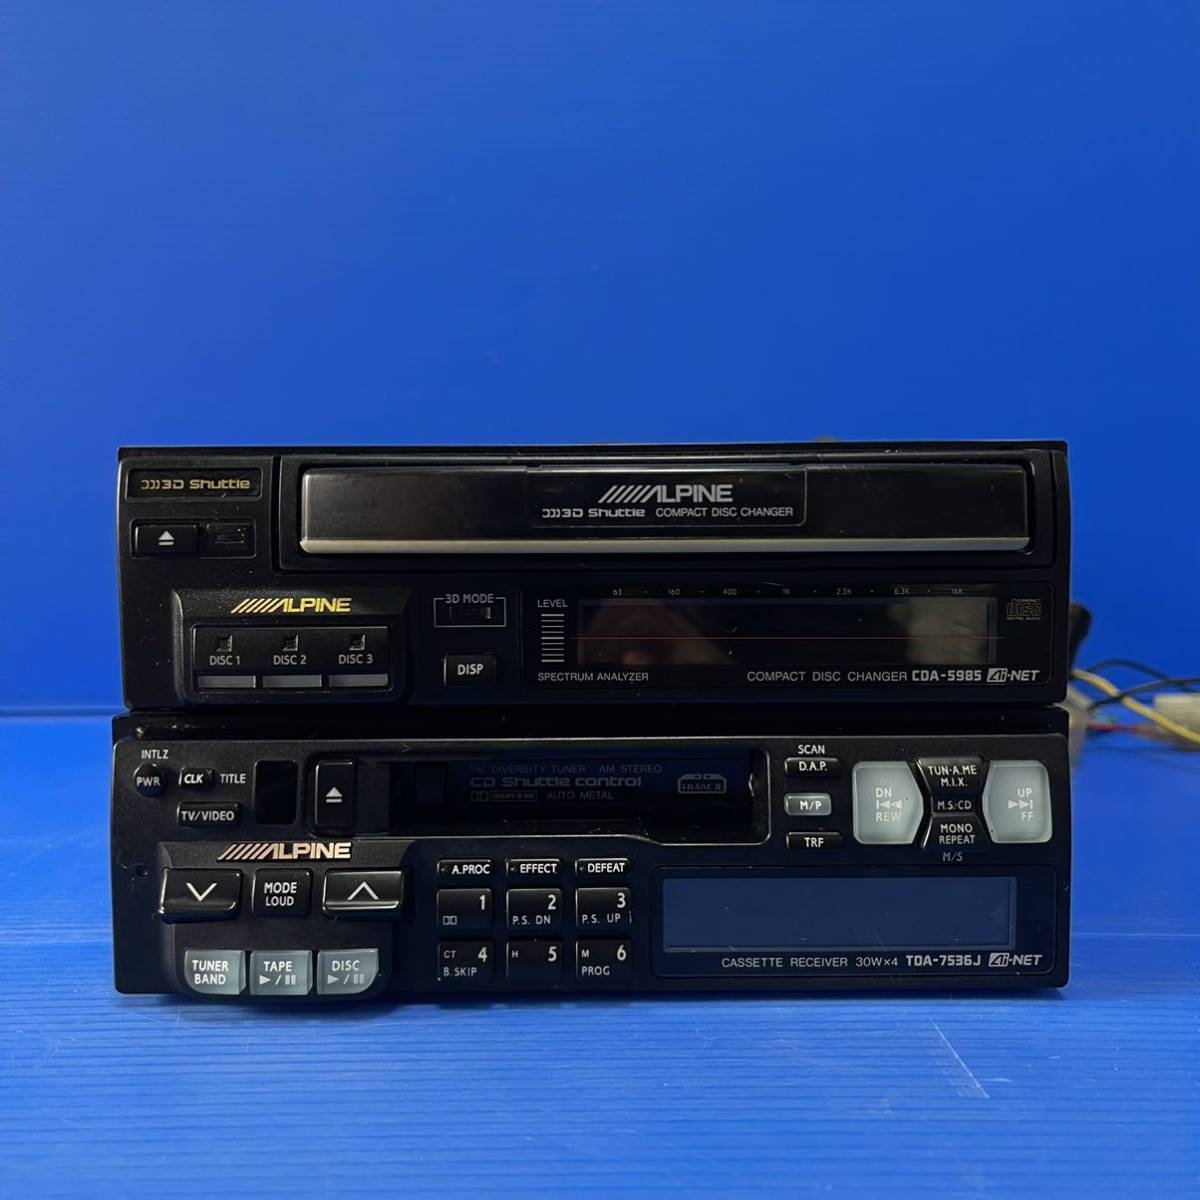 ALPINE TDA 7536J/ CDA-5985 / эквалайзер / Alpine / старый машина / Vintage / Old / графический эквалайзер кассета CD плеер античный годы предмет 